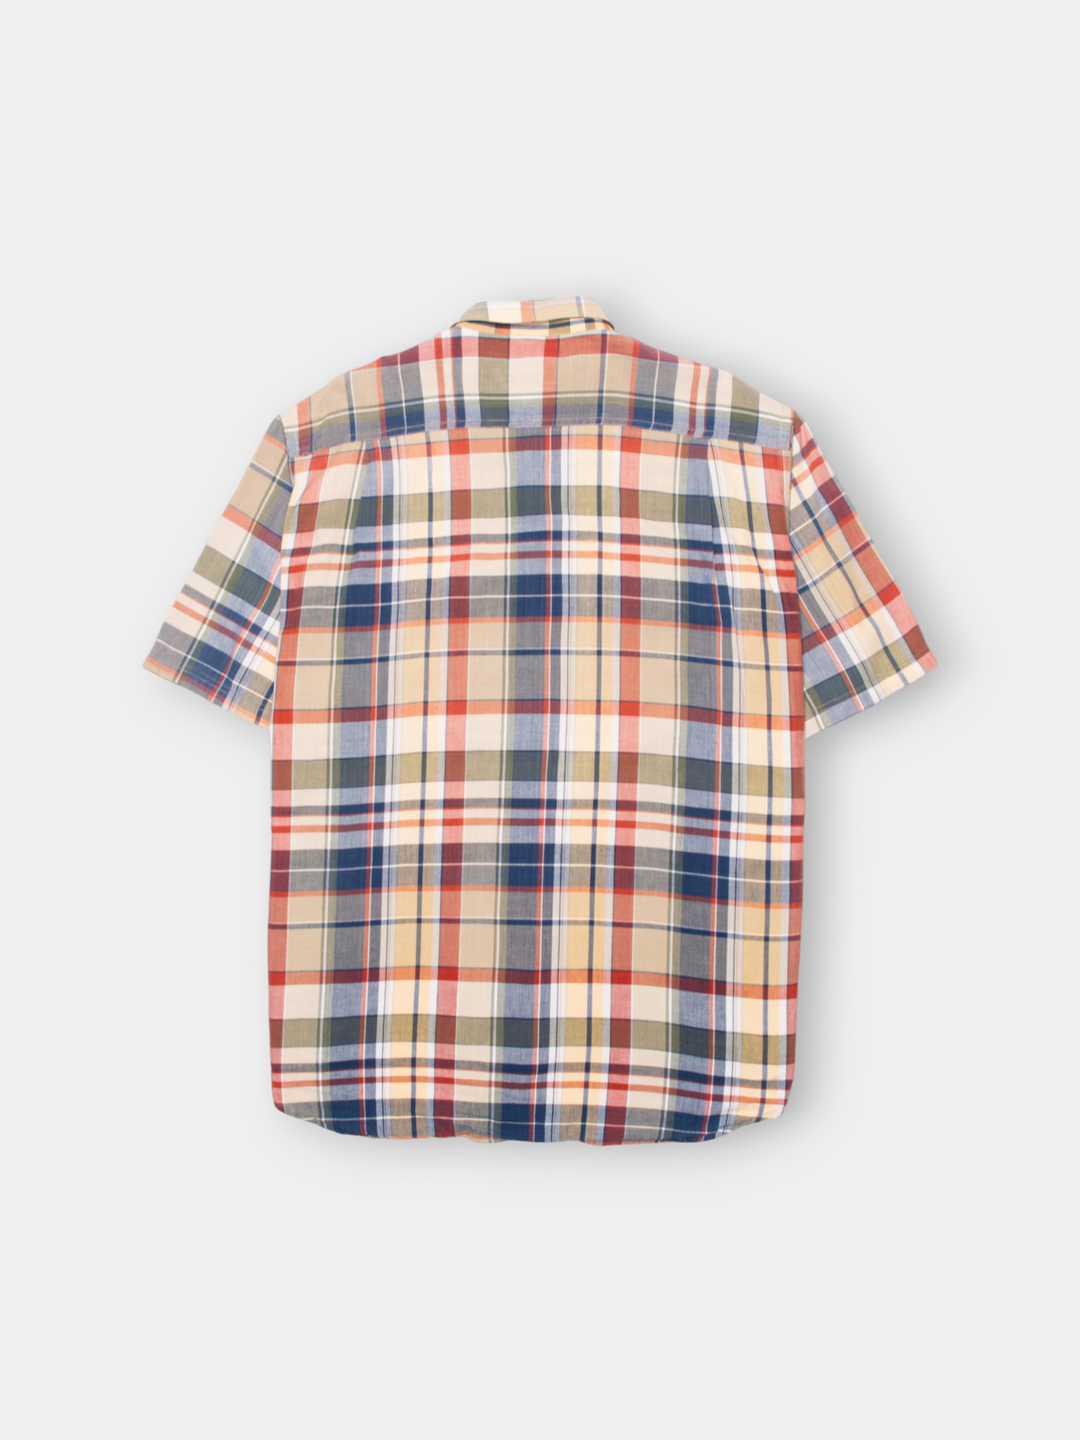 90s Nautica Plaid Shirt (XL)